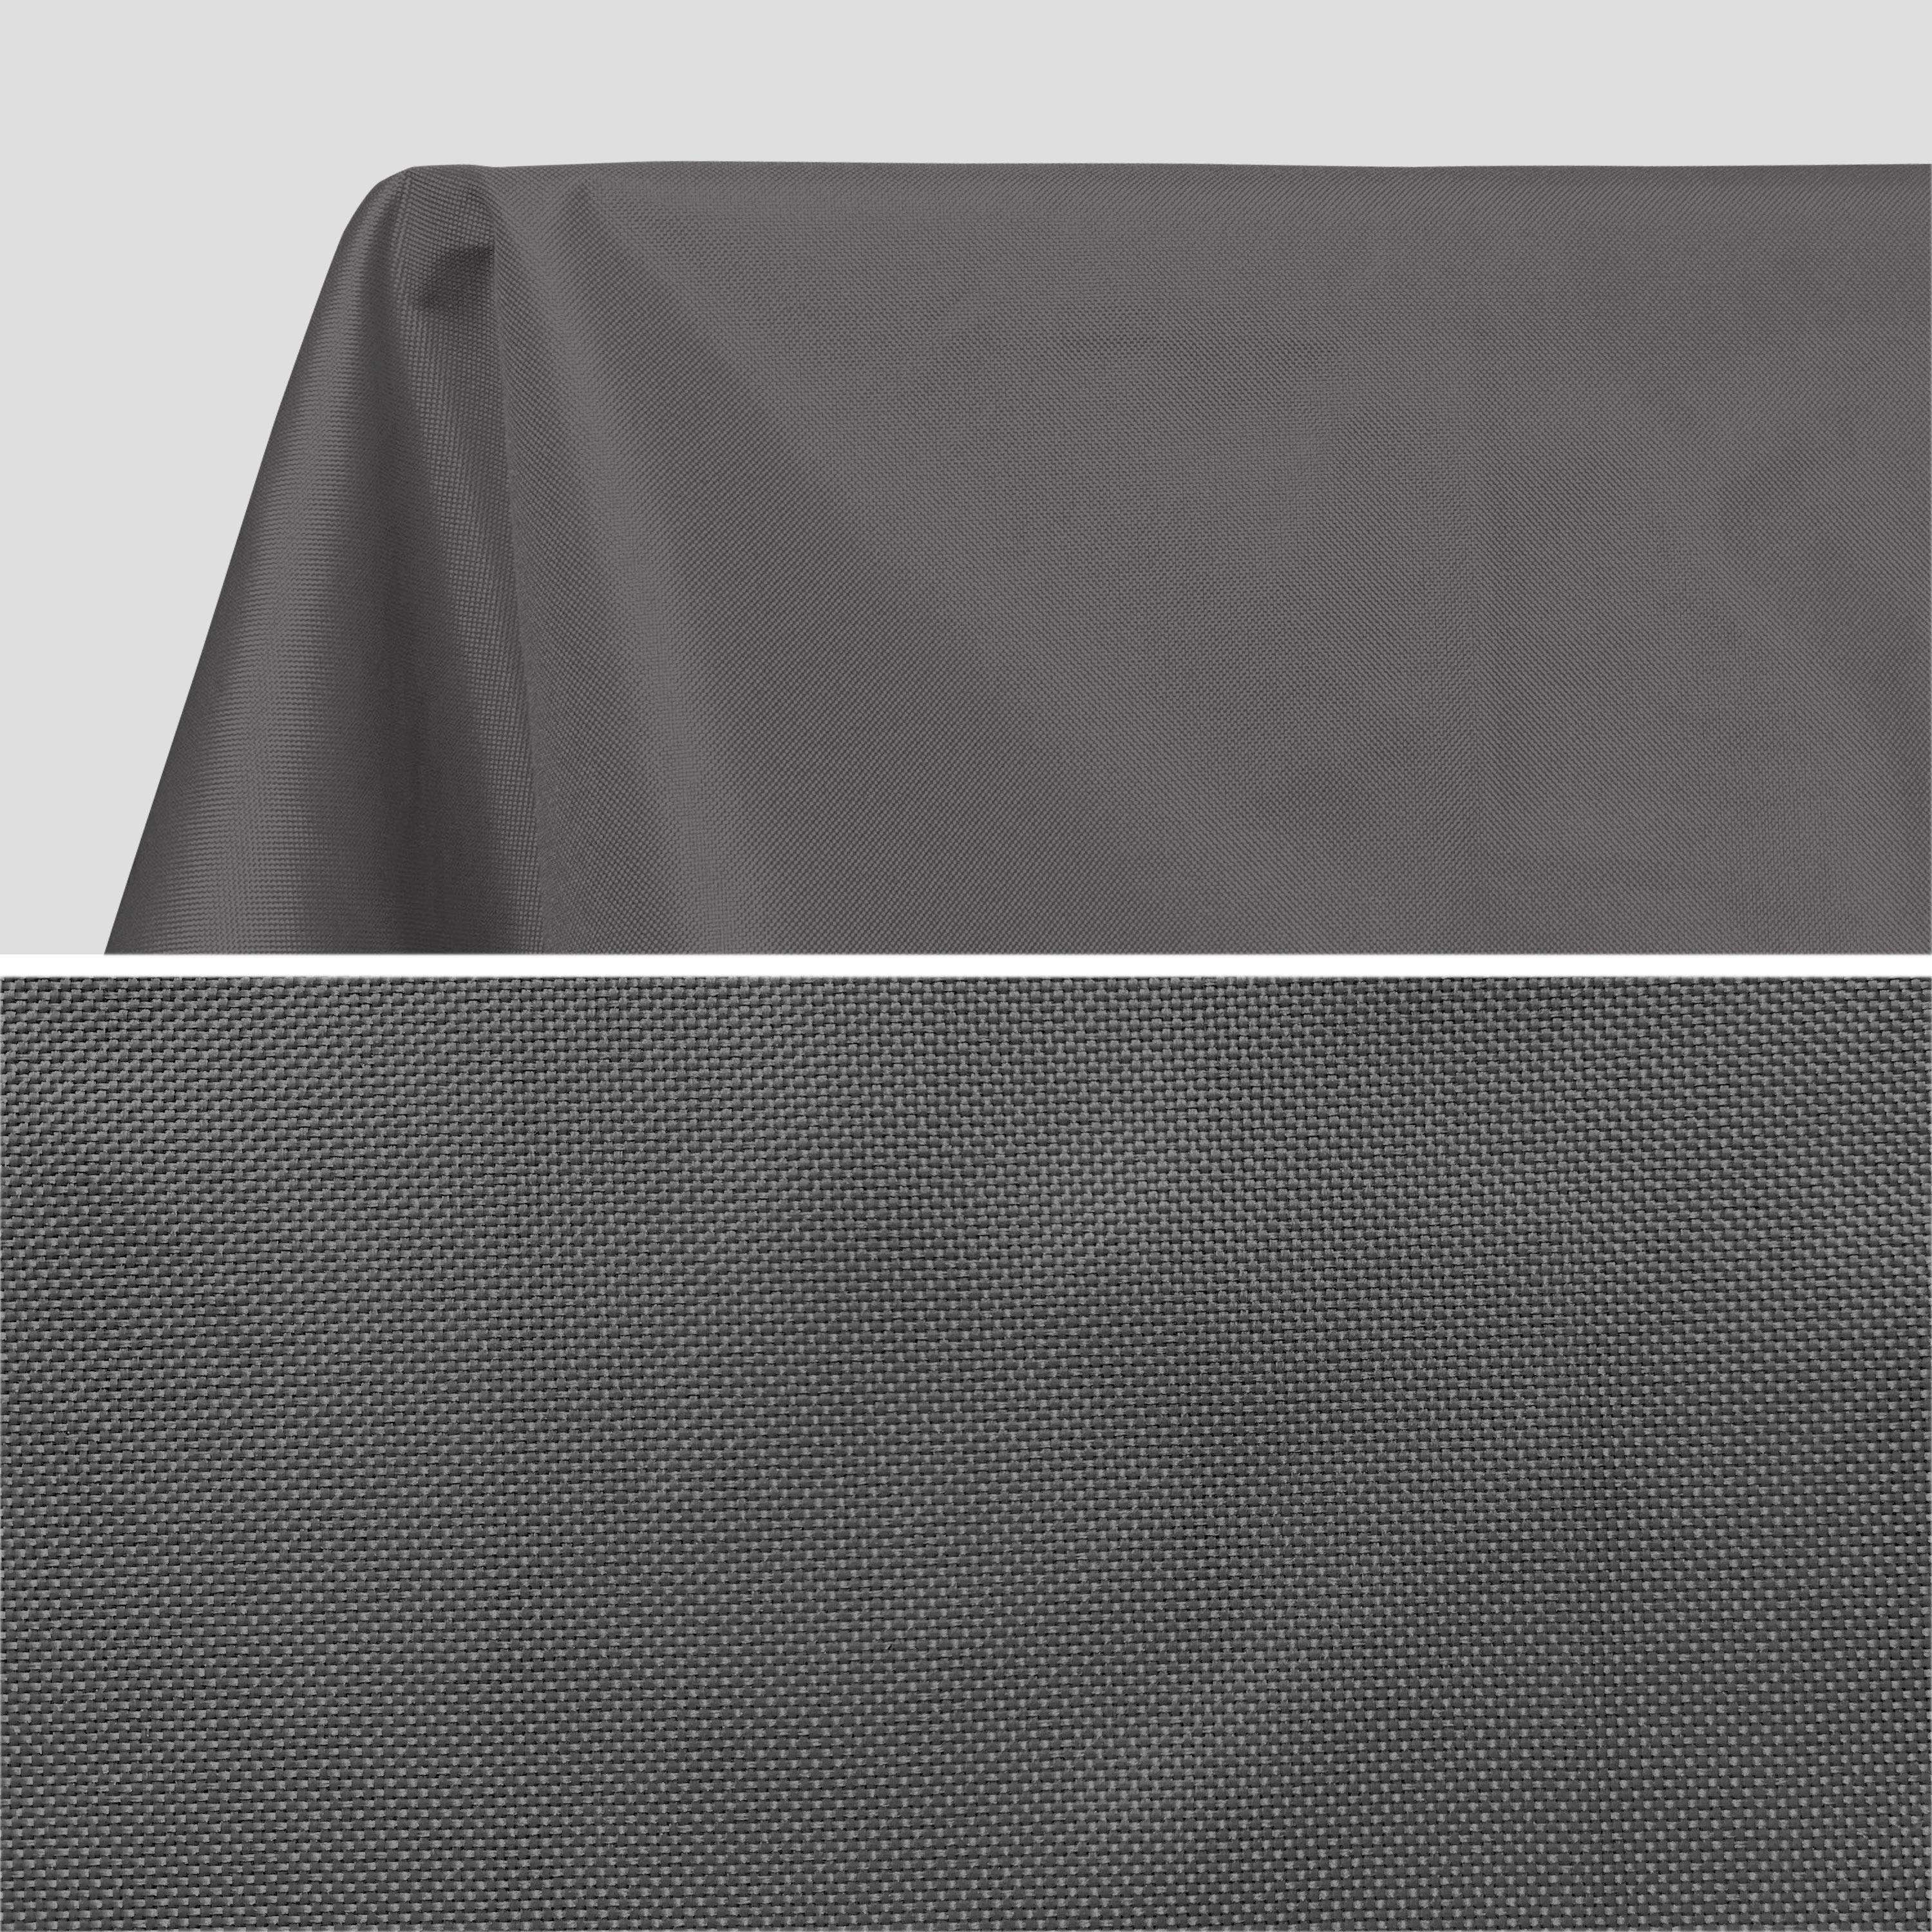 Kollektion HERITAGE - Outdoor-Tischdecke 140 x 240 cm Grau, 100% Polyester, schützt den Tisch, UV-Schutz, sommerlicher Stil Photo2